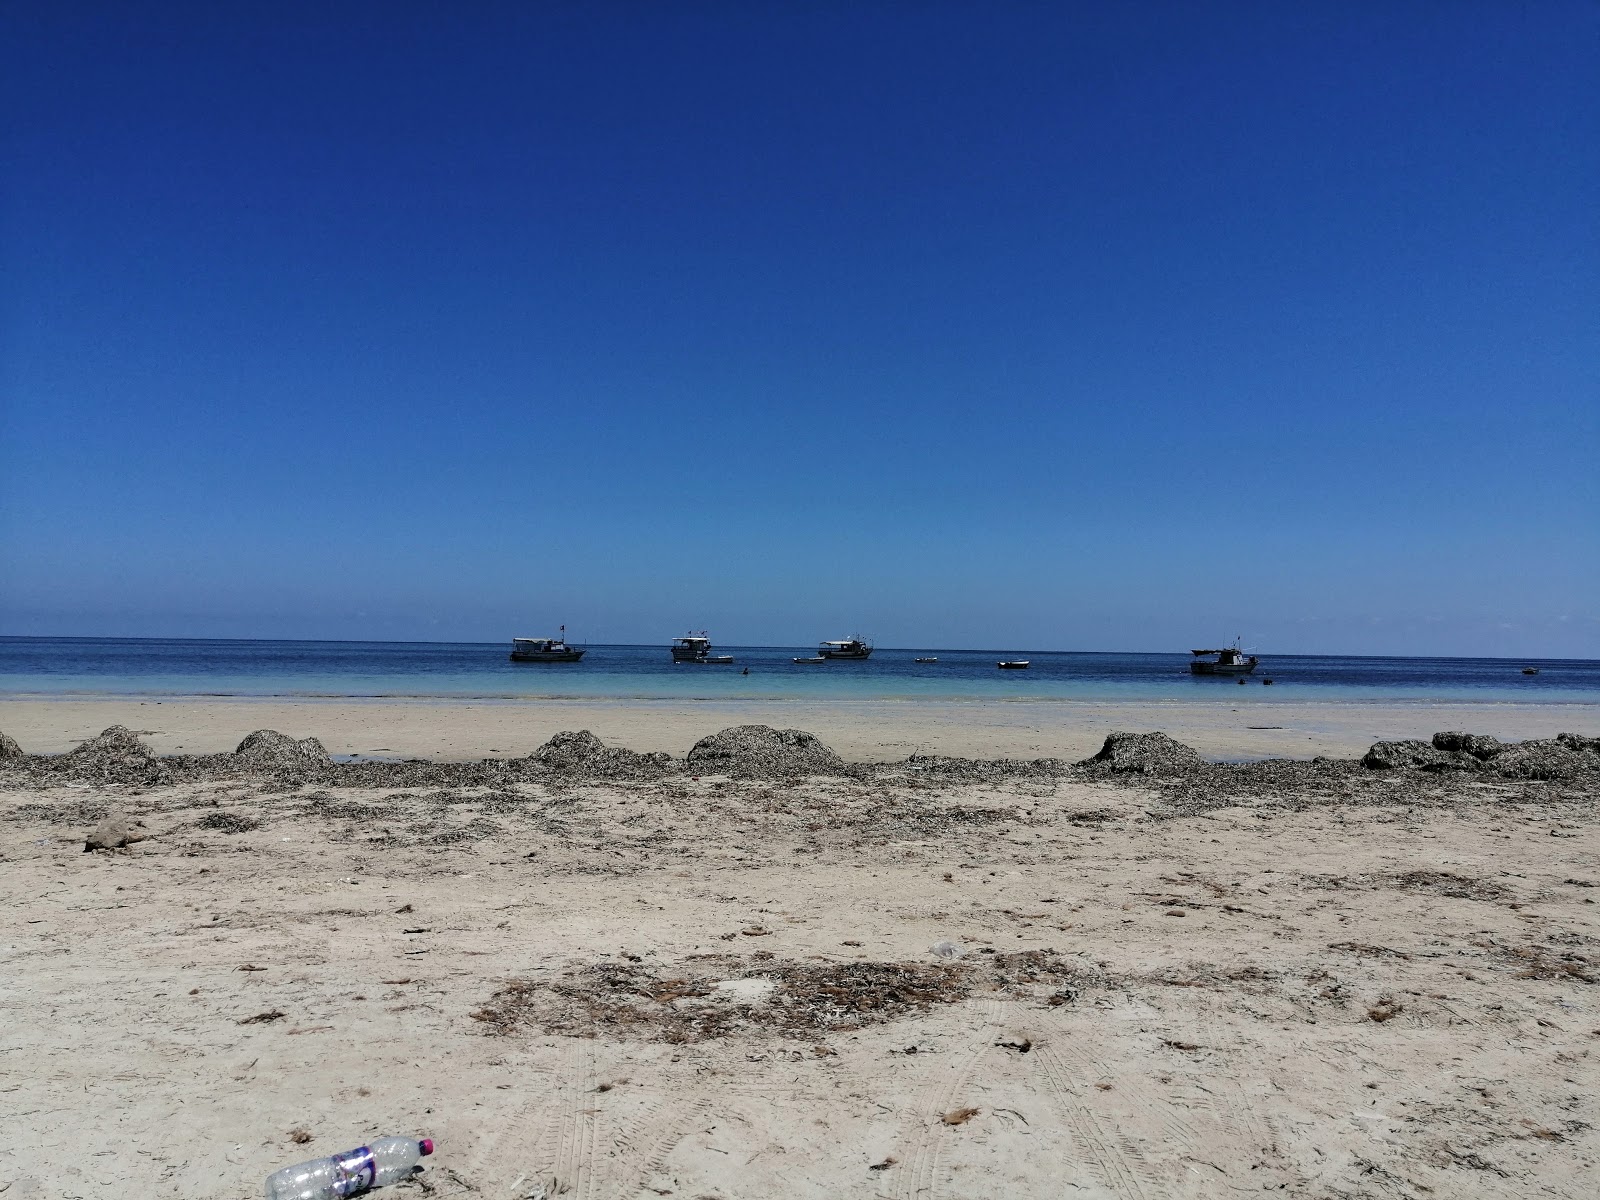 Aqla beach'in fotoğrafı beyaz kum yüzey ile